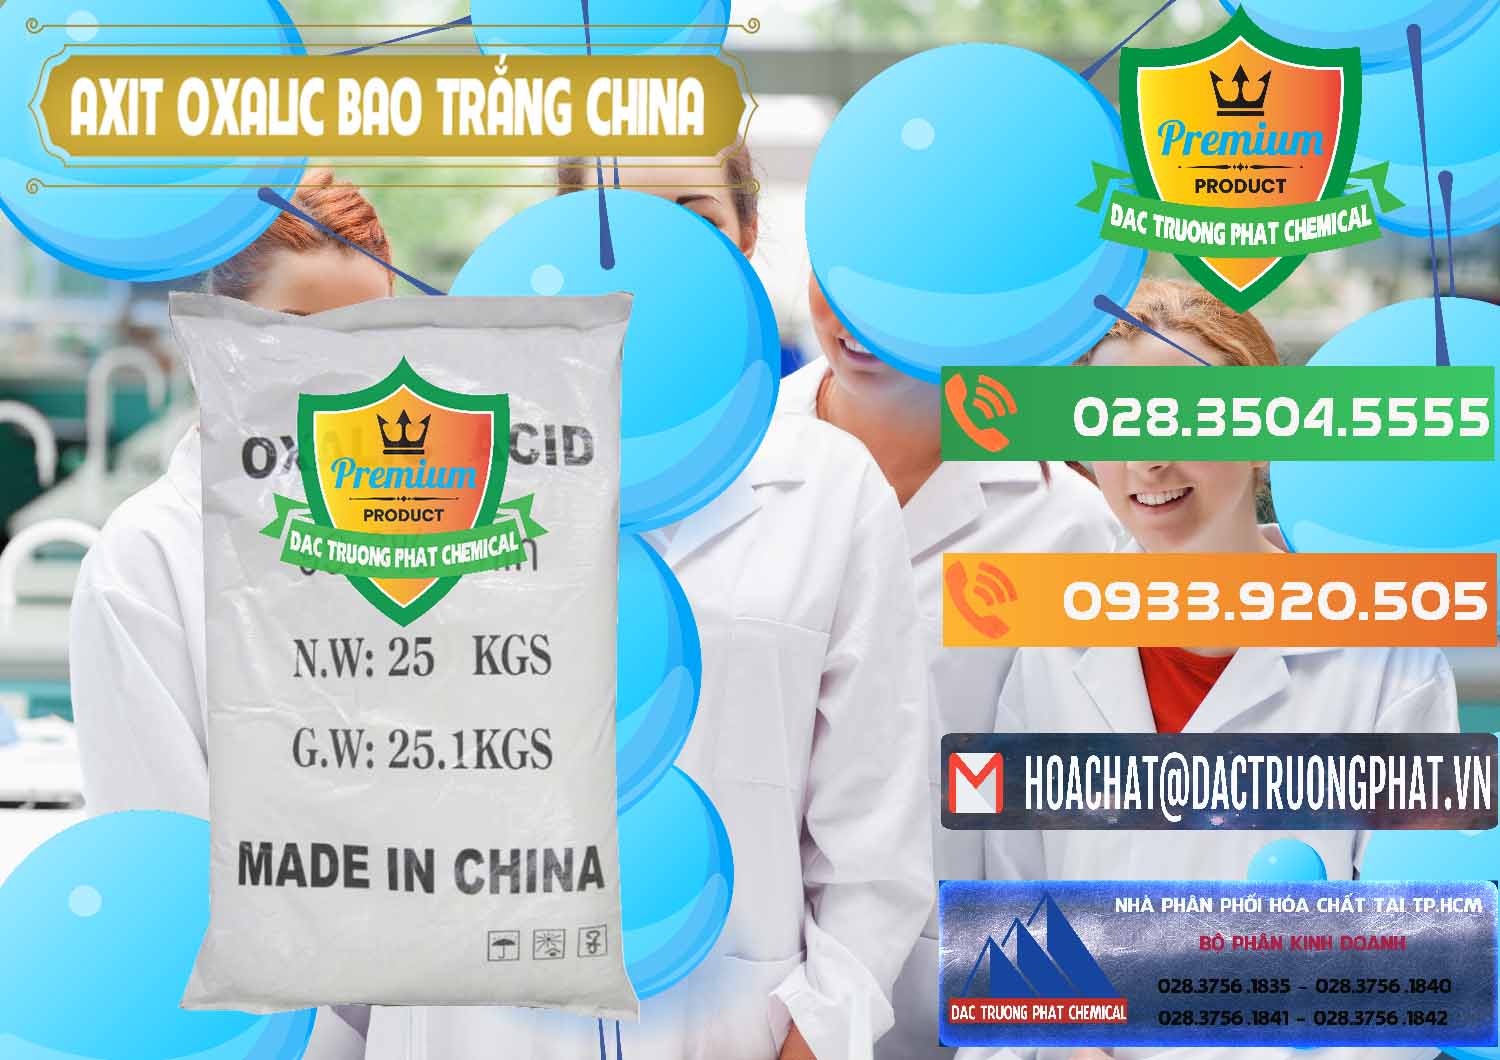 Cung cấp và bán Acid Oxalic – Axit Oxalic 99.6% Bao Trắng Trung Quốc China - 0270 - Cty bán ( cung cấp ) hóa chất tại TP.HCM - hoachatxulynuoc.com.vn